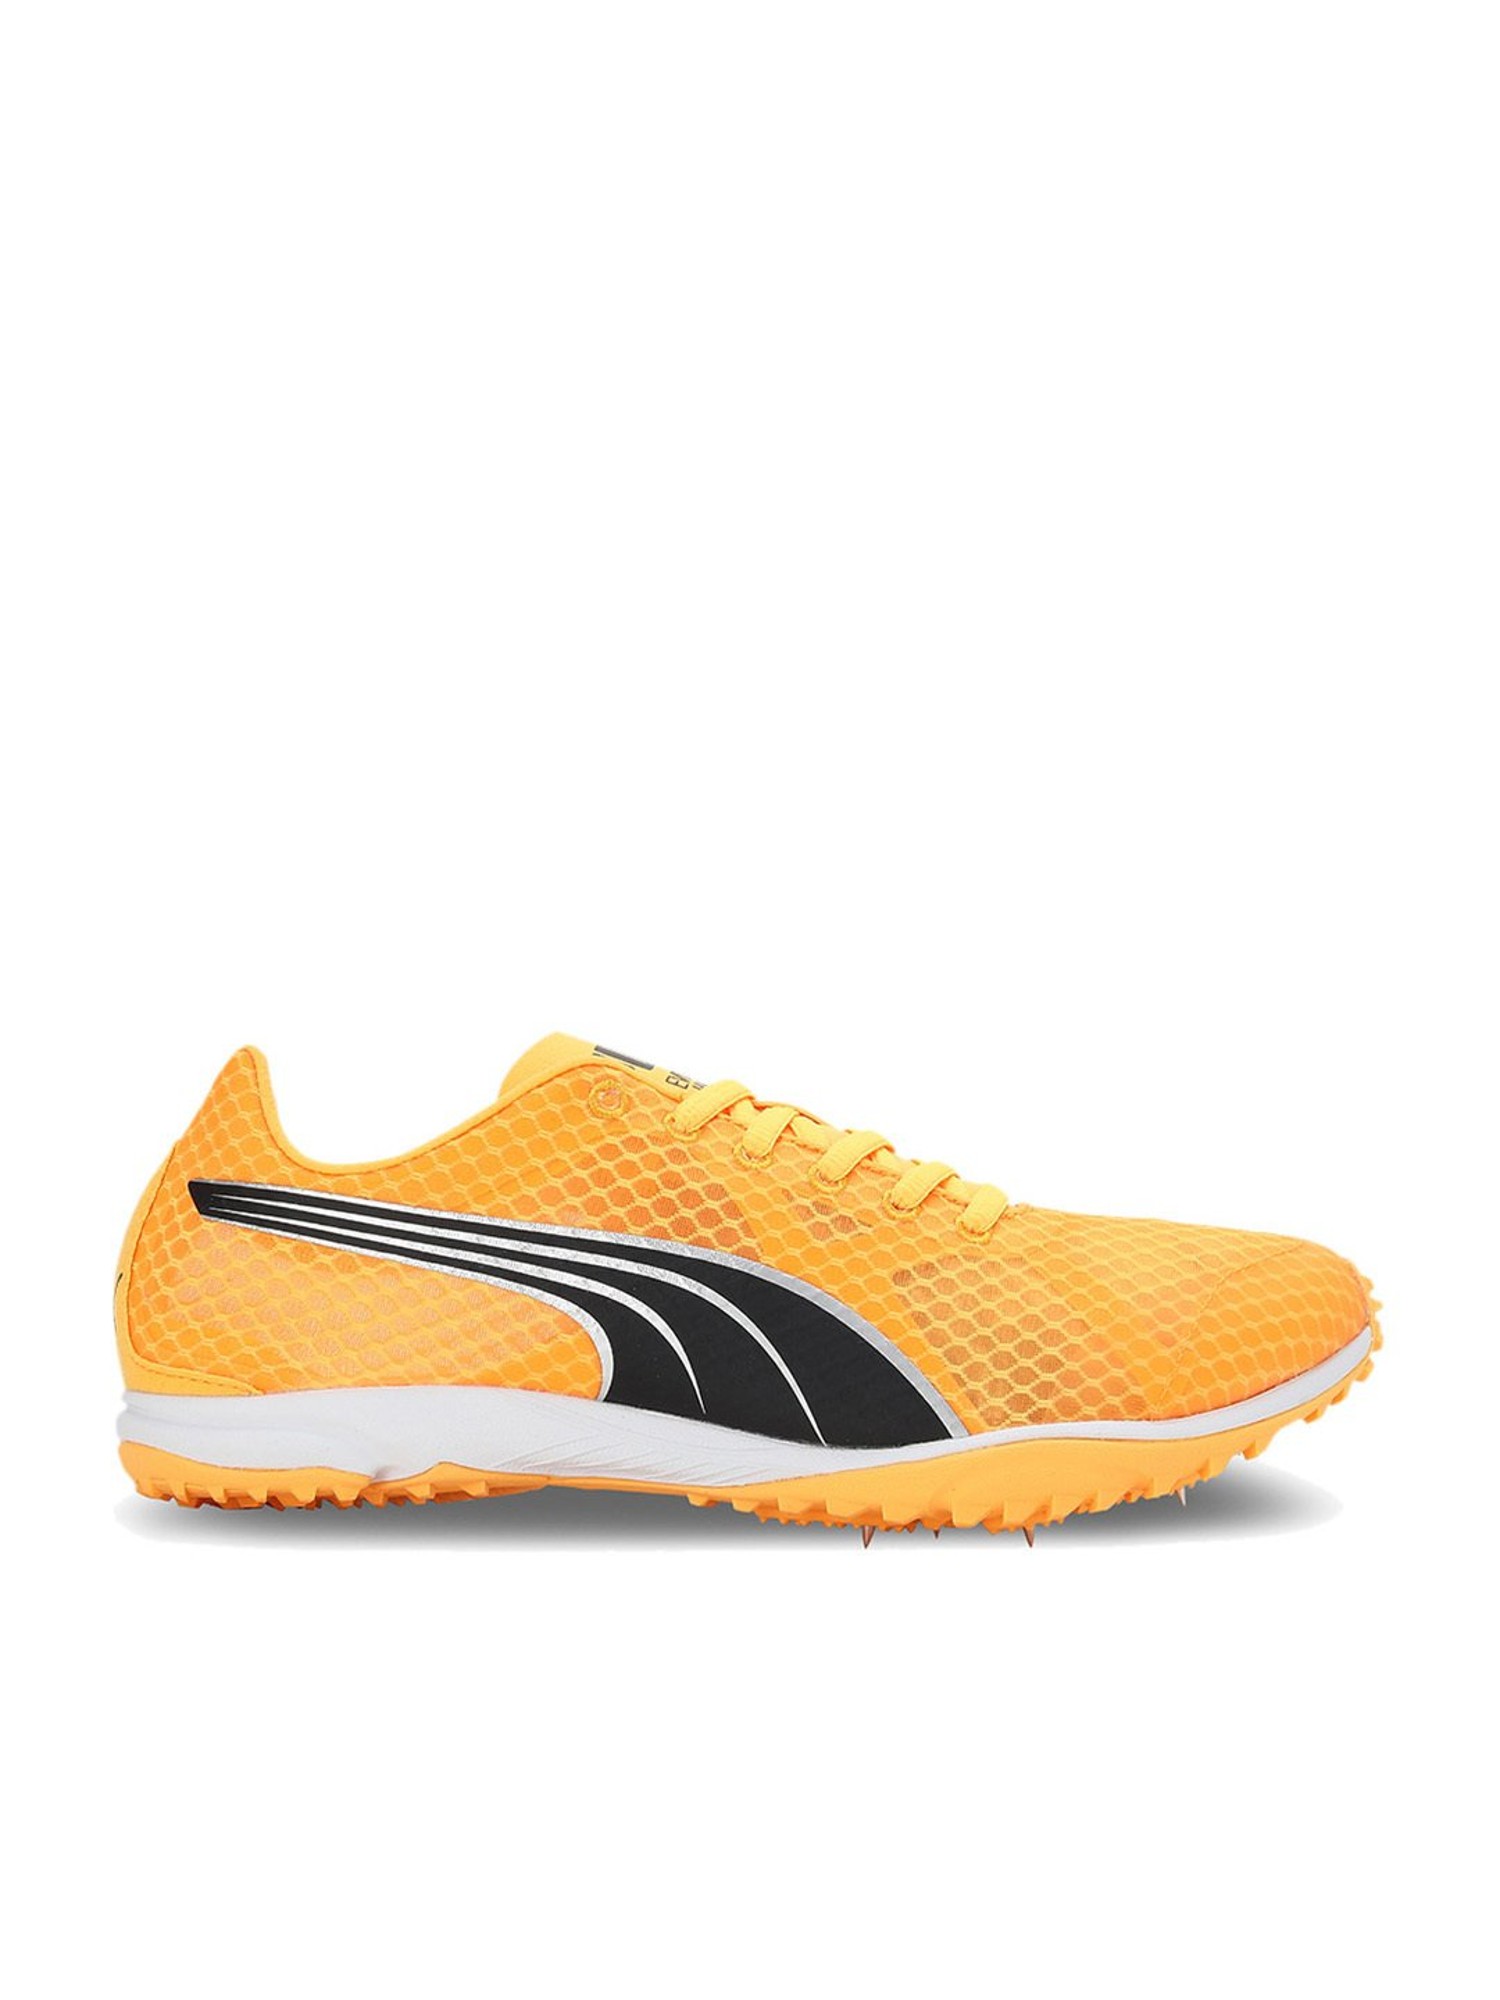 Buy Men's evoSPEED Haraka 7 Orange Running Shoes for Men at Best Price @